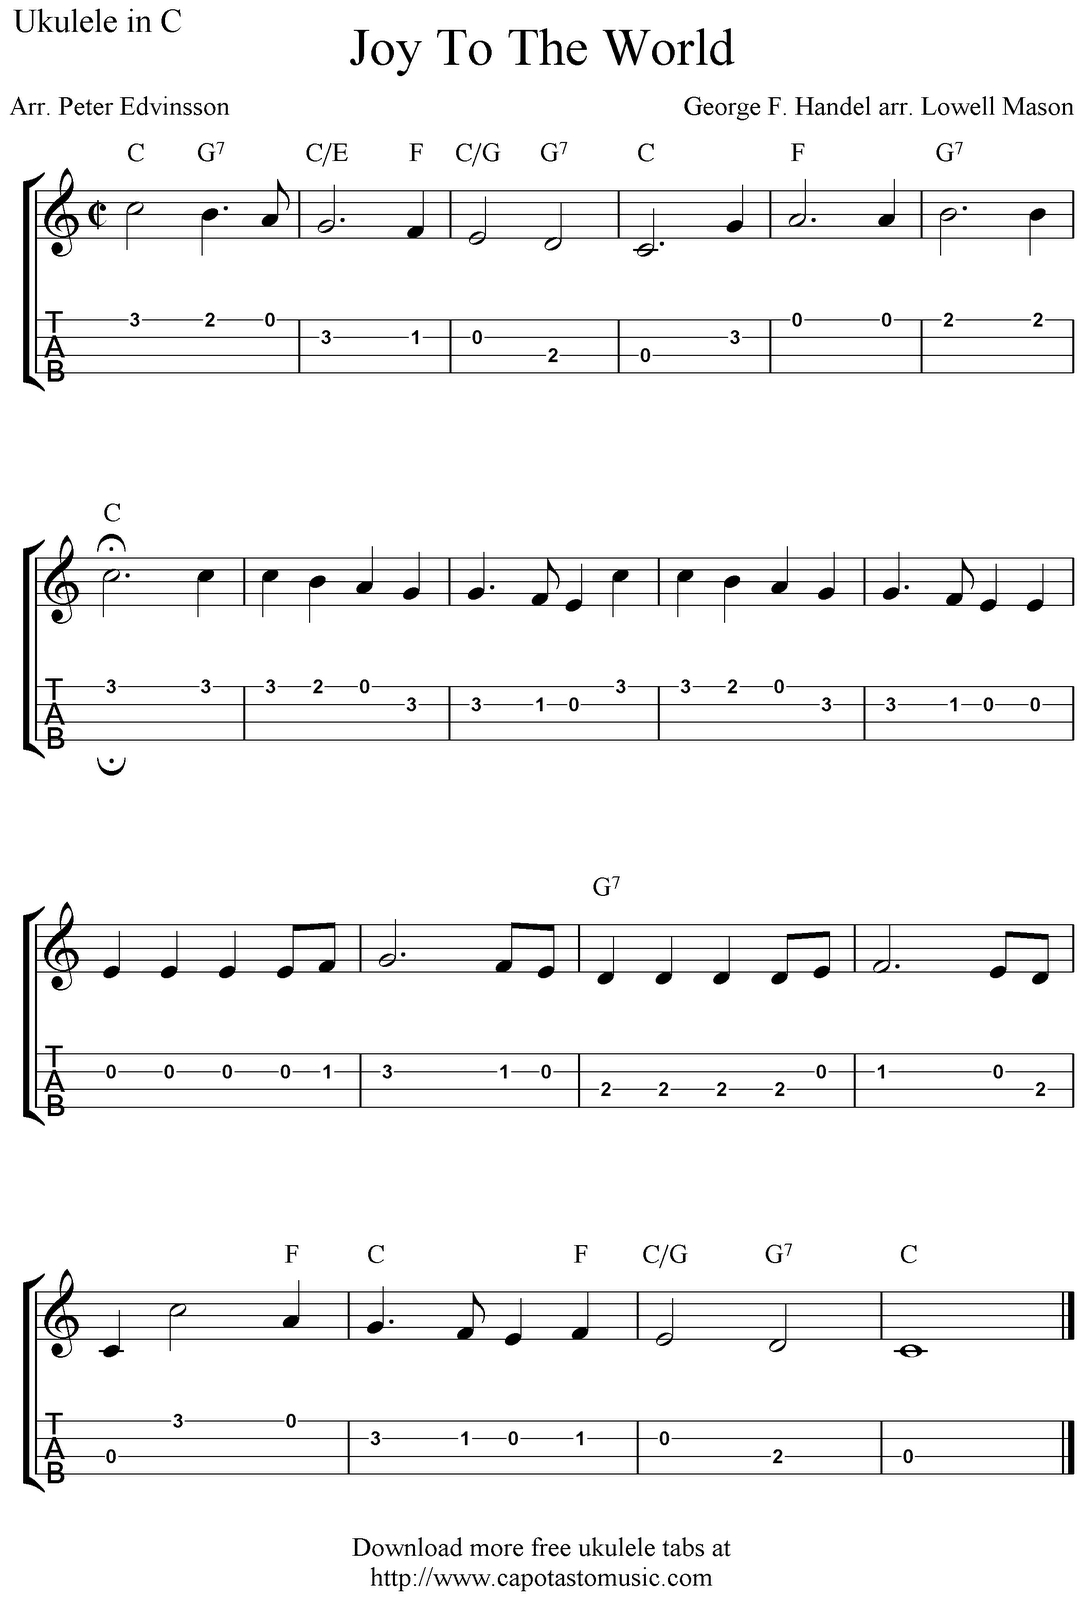 ✓&amp;quot;joy To The World&amp;quot; Ukulele Sheet Music - Free Printable | Tips For - Free Printable Ukulele Songs